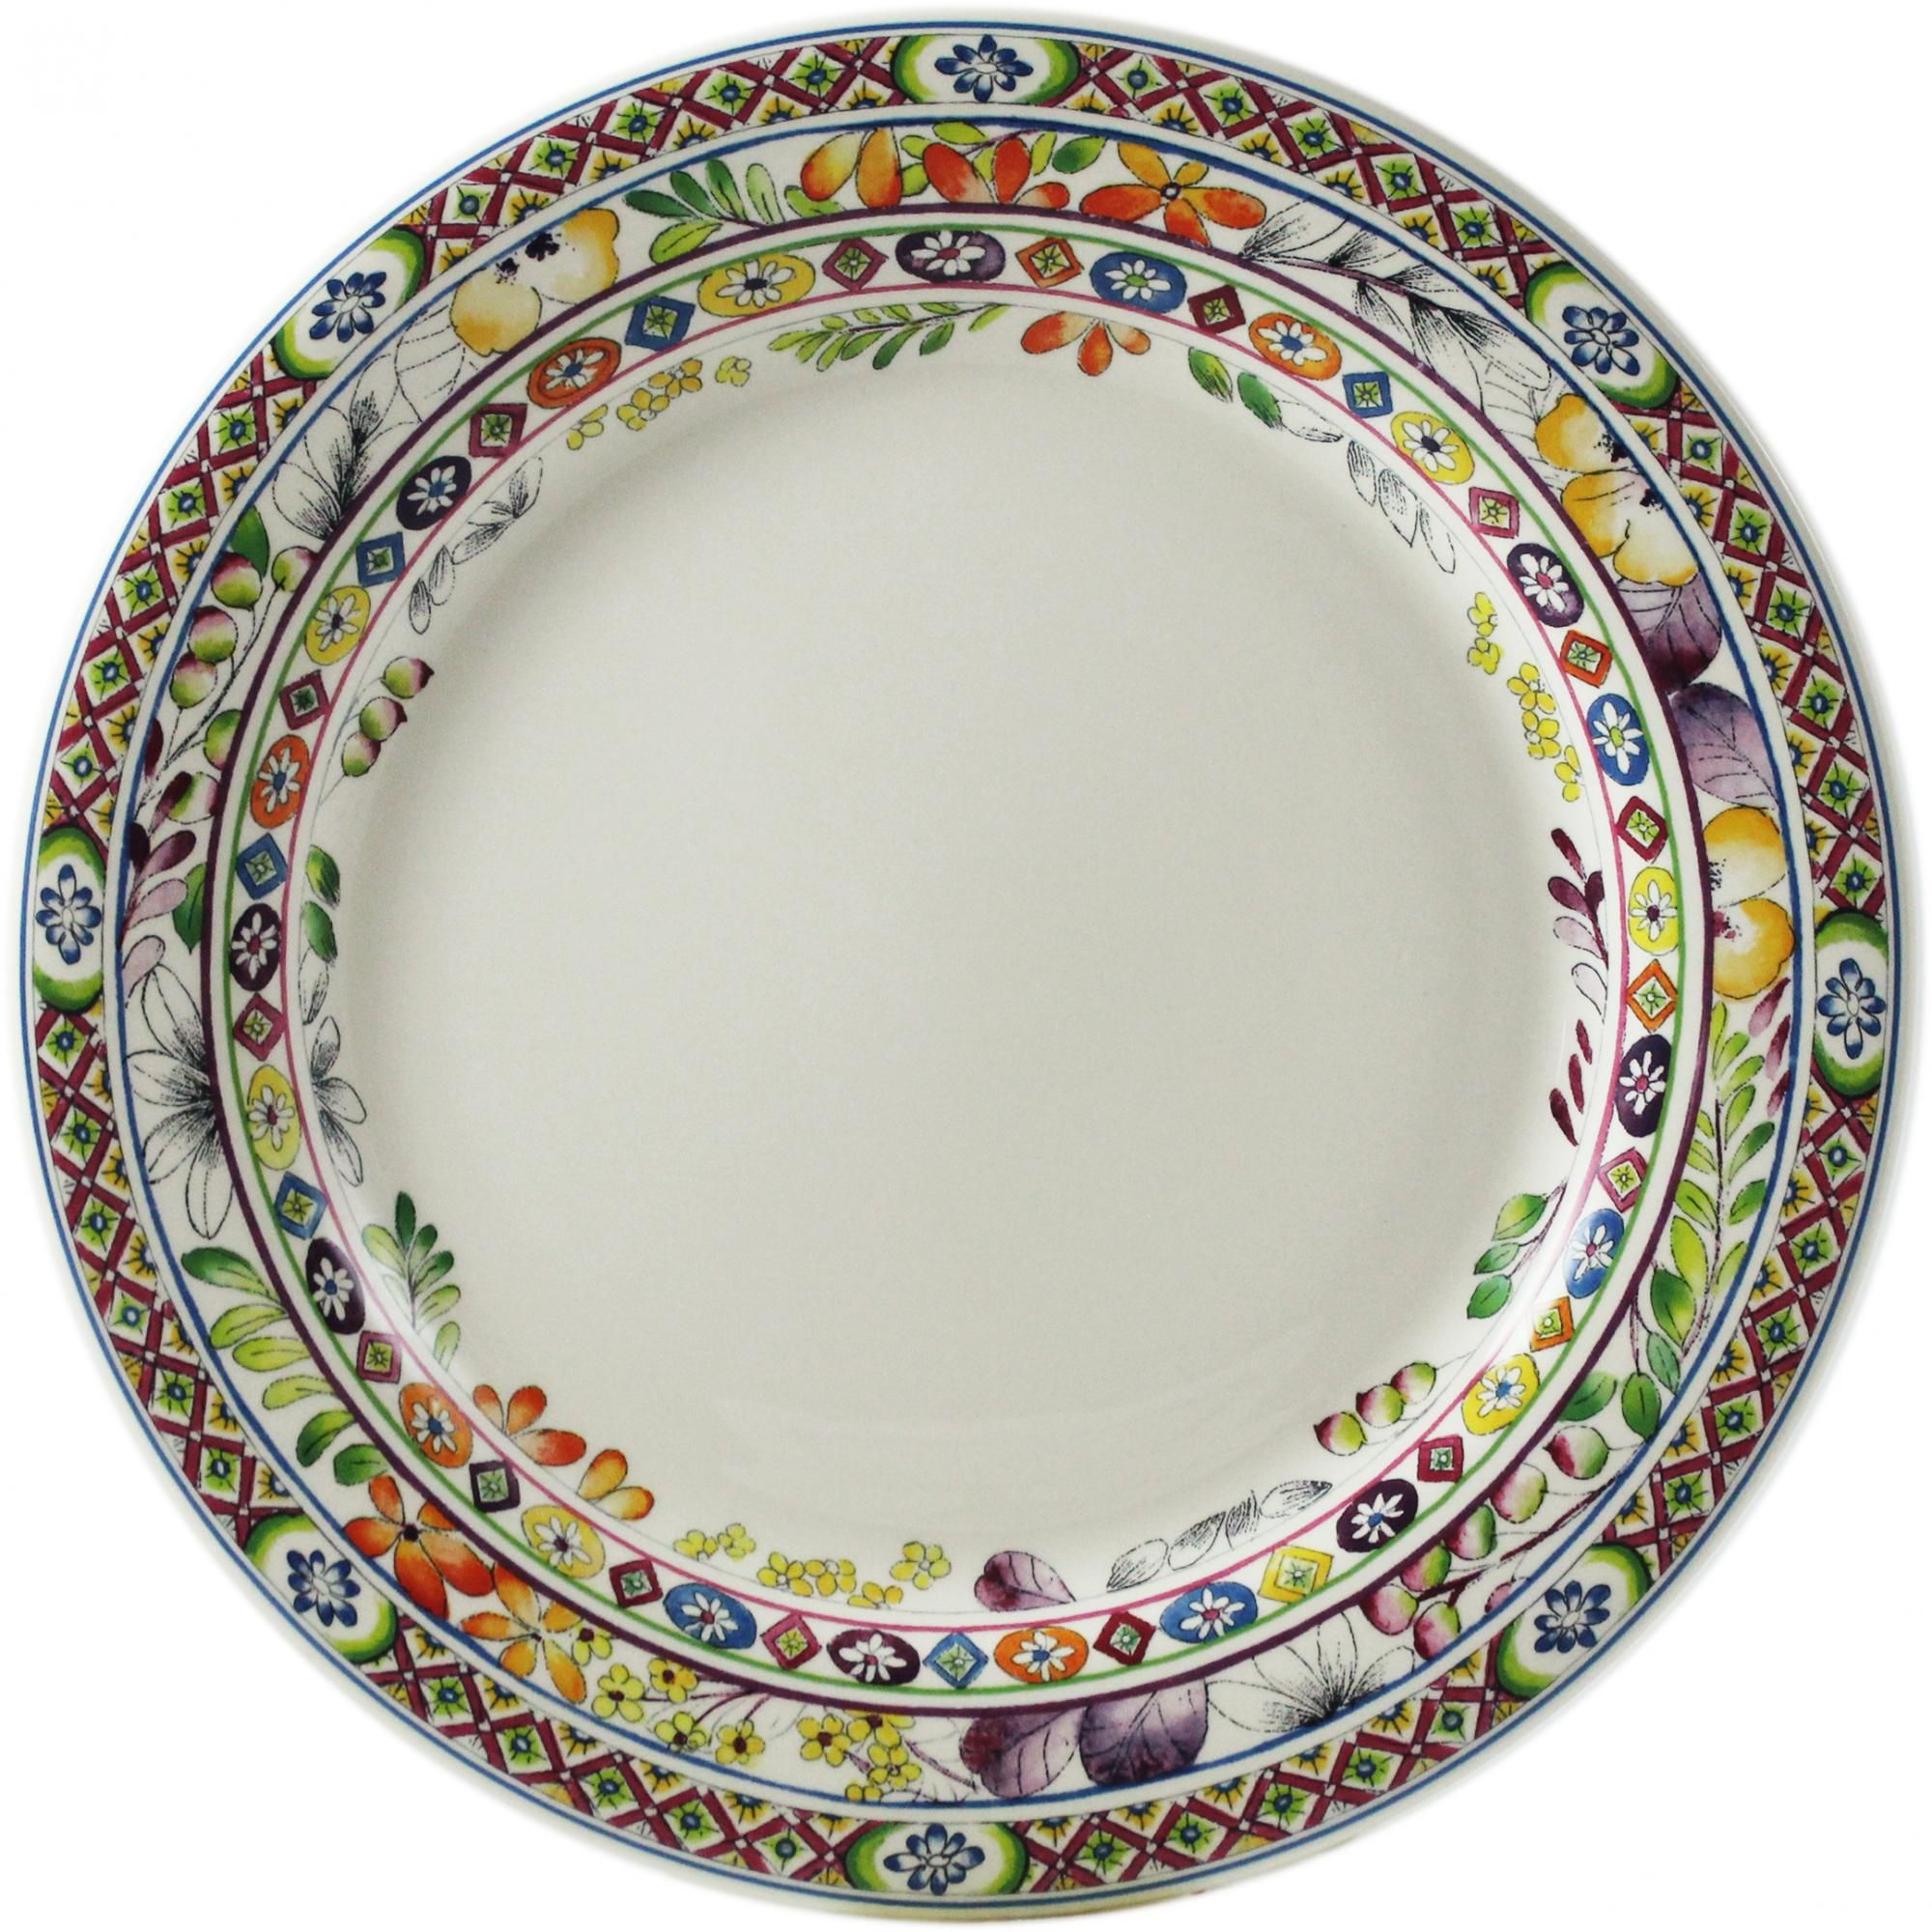 Тарелка обеденная фарфор. Жьен посуда. Французская посуда Gien. Тарелка обеденная набор 4 шт.., les oiseaux, д 27,4 cm Gien. Тарелка Gien Франция.